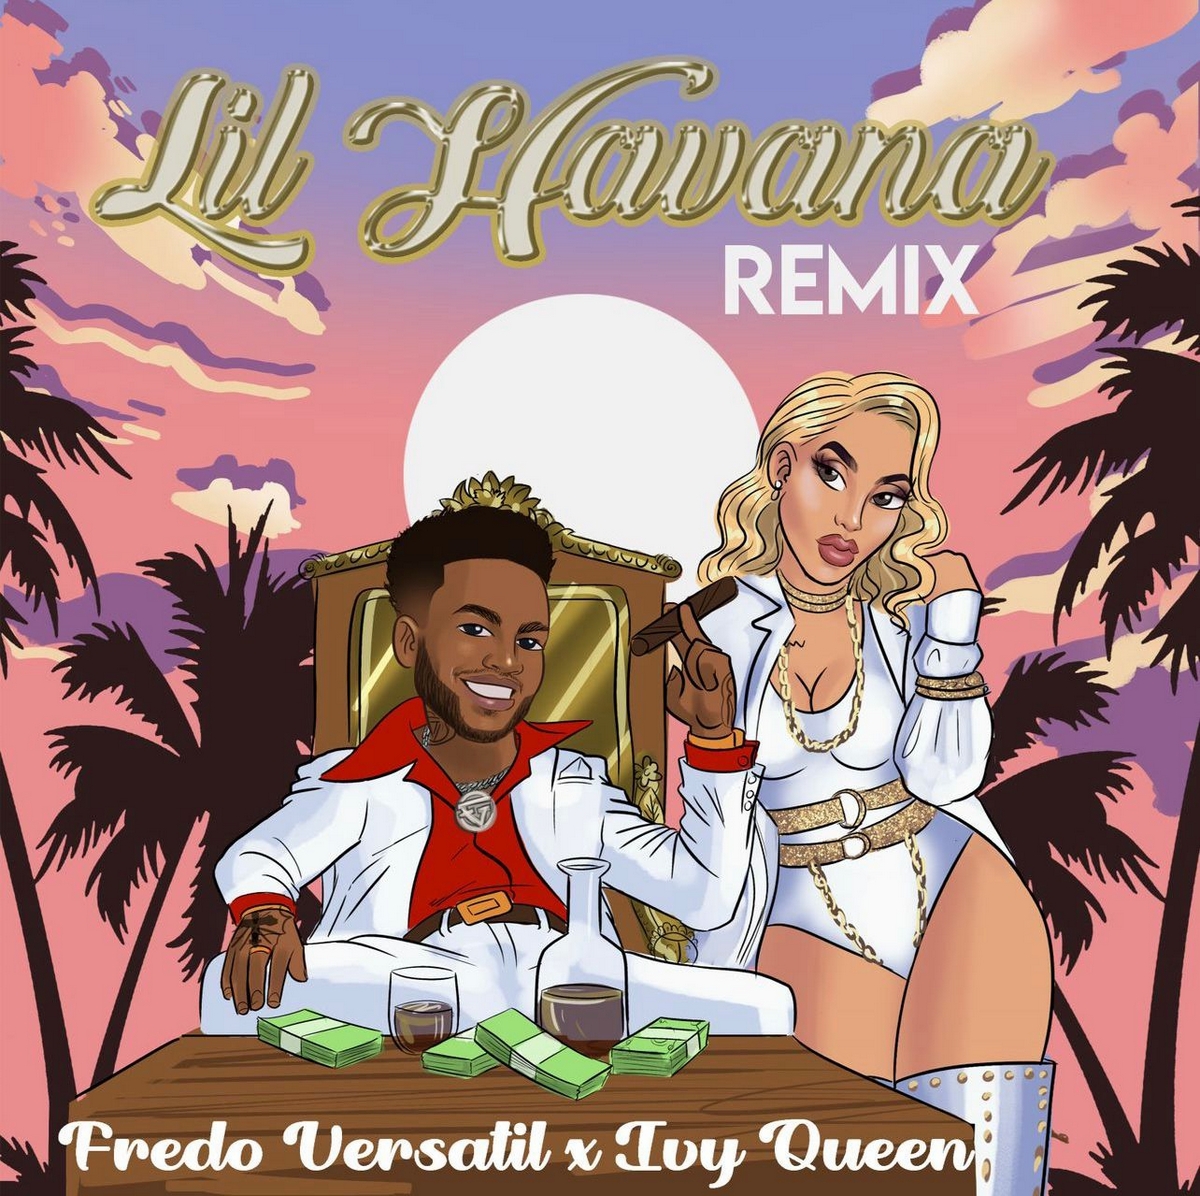 Fredo Versátil une a Ivy Queen en el remix de “Little Havana”